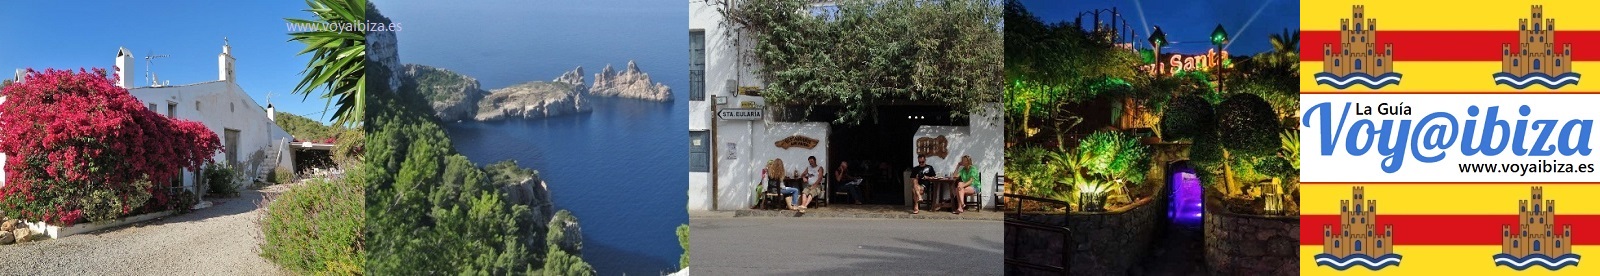 Lugares y rincones de Ibiza (I)